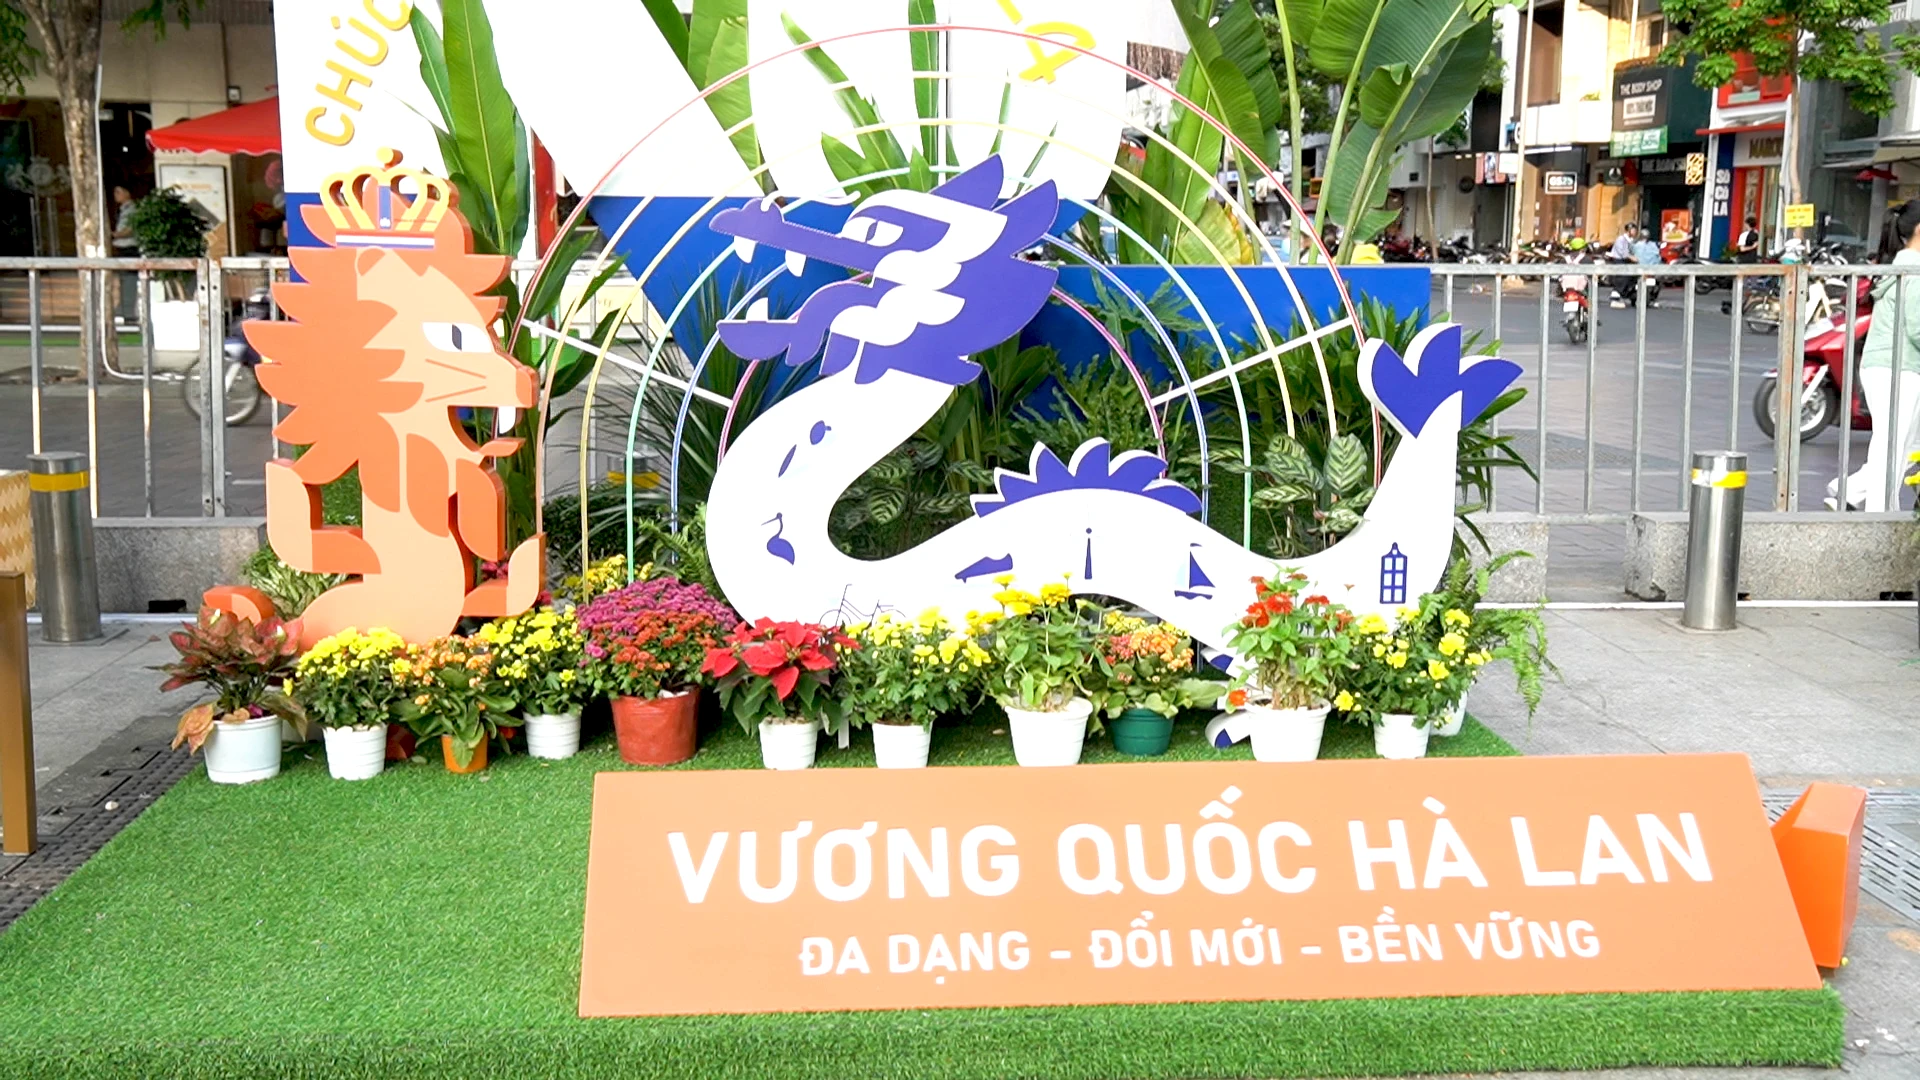 BLV Phước Nhân choáng ngợp với cặp đôi rồng dài 100 mét ở đường hoa Nguyễn Huệ Tết Giáp Thìn